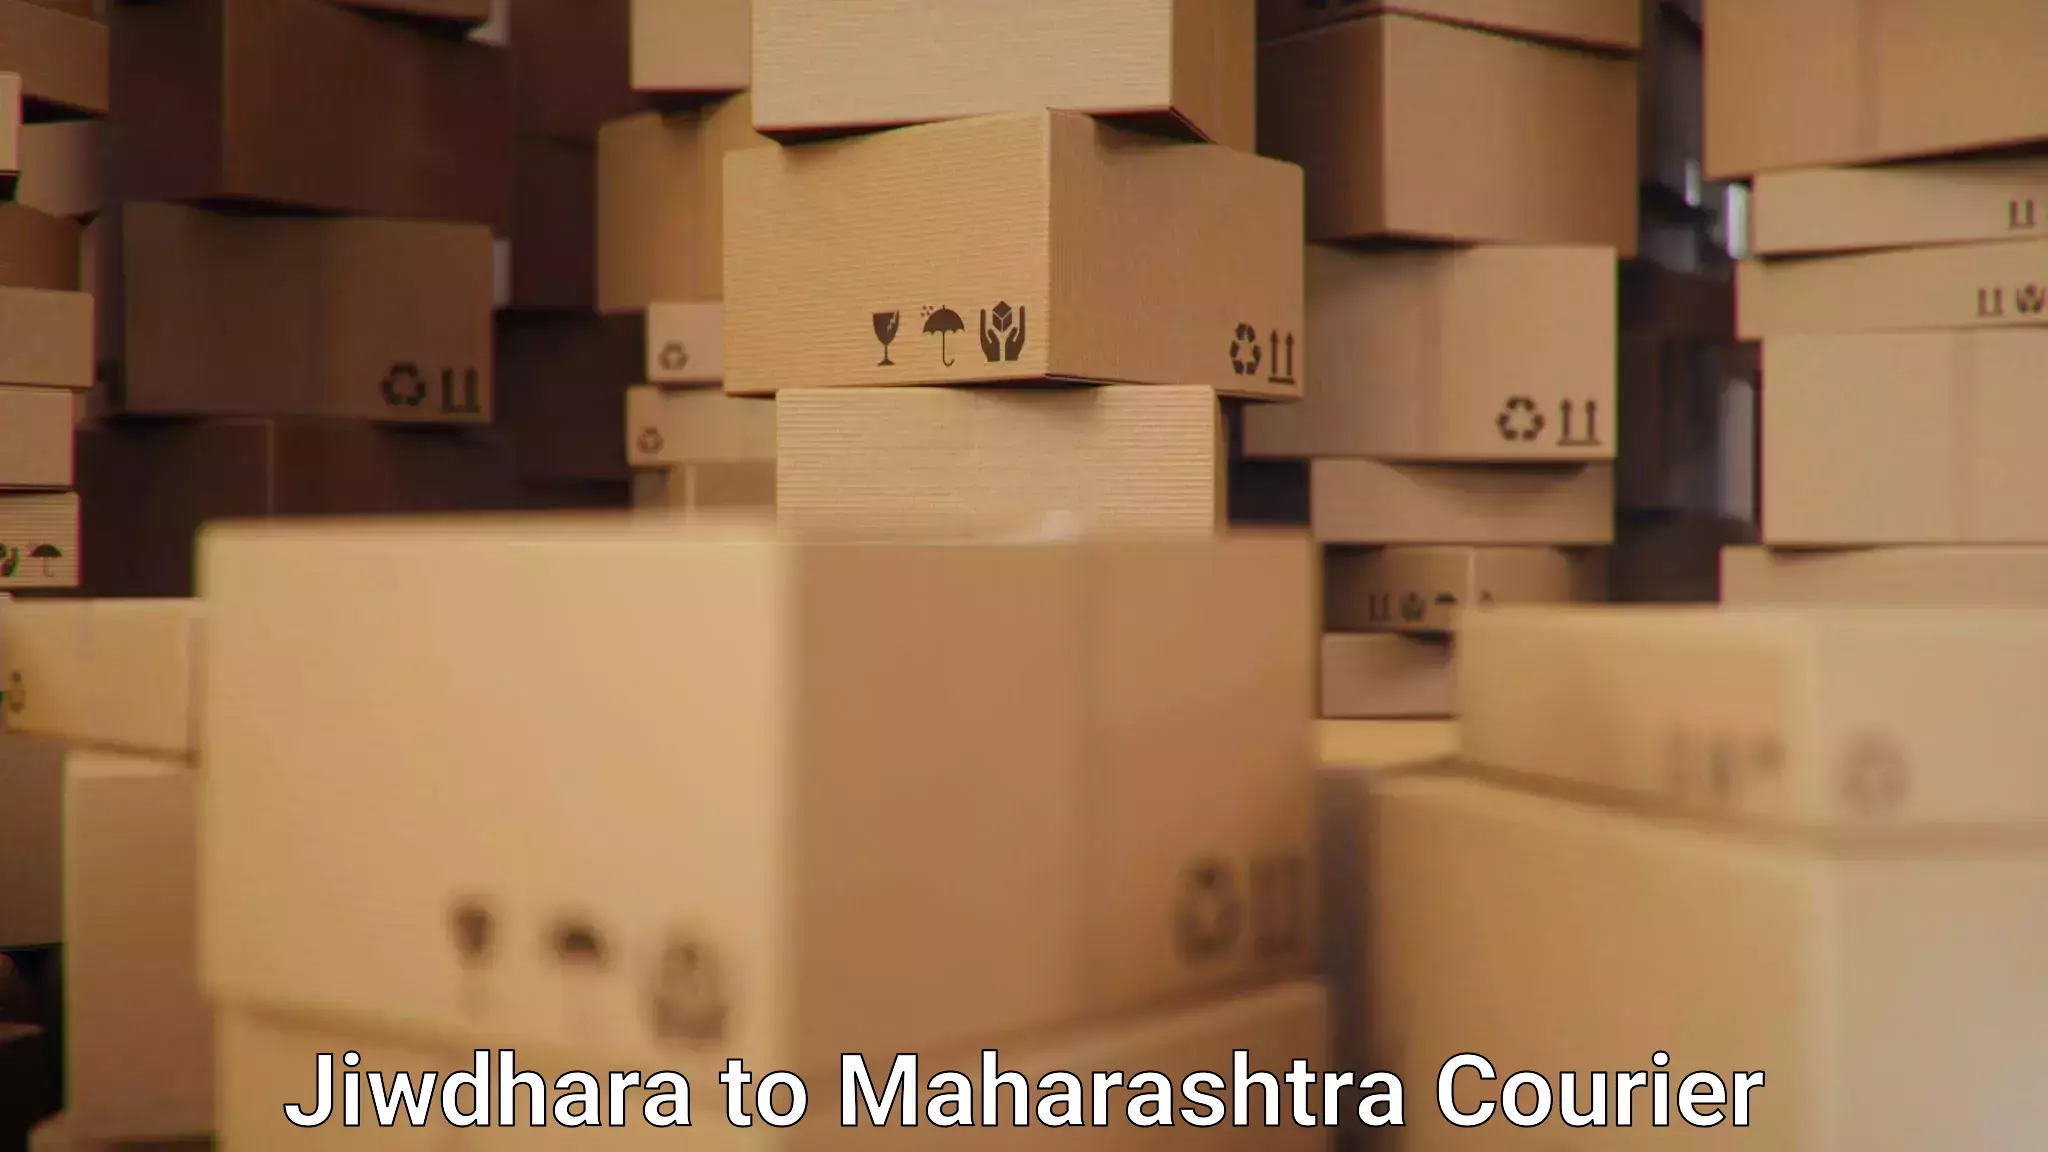 Express package transport Jiwdhara to Maharashtra